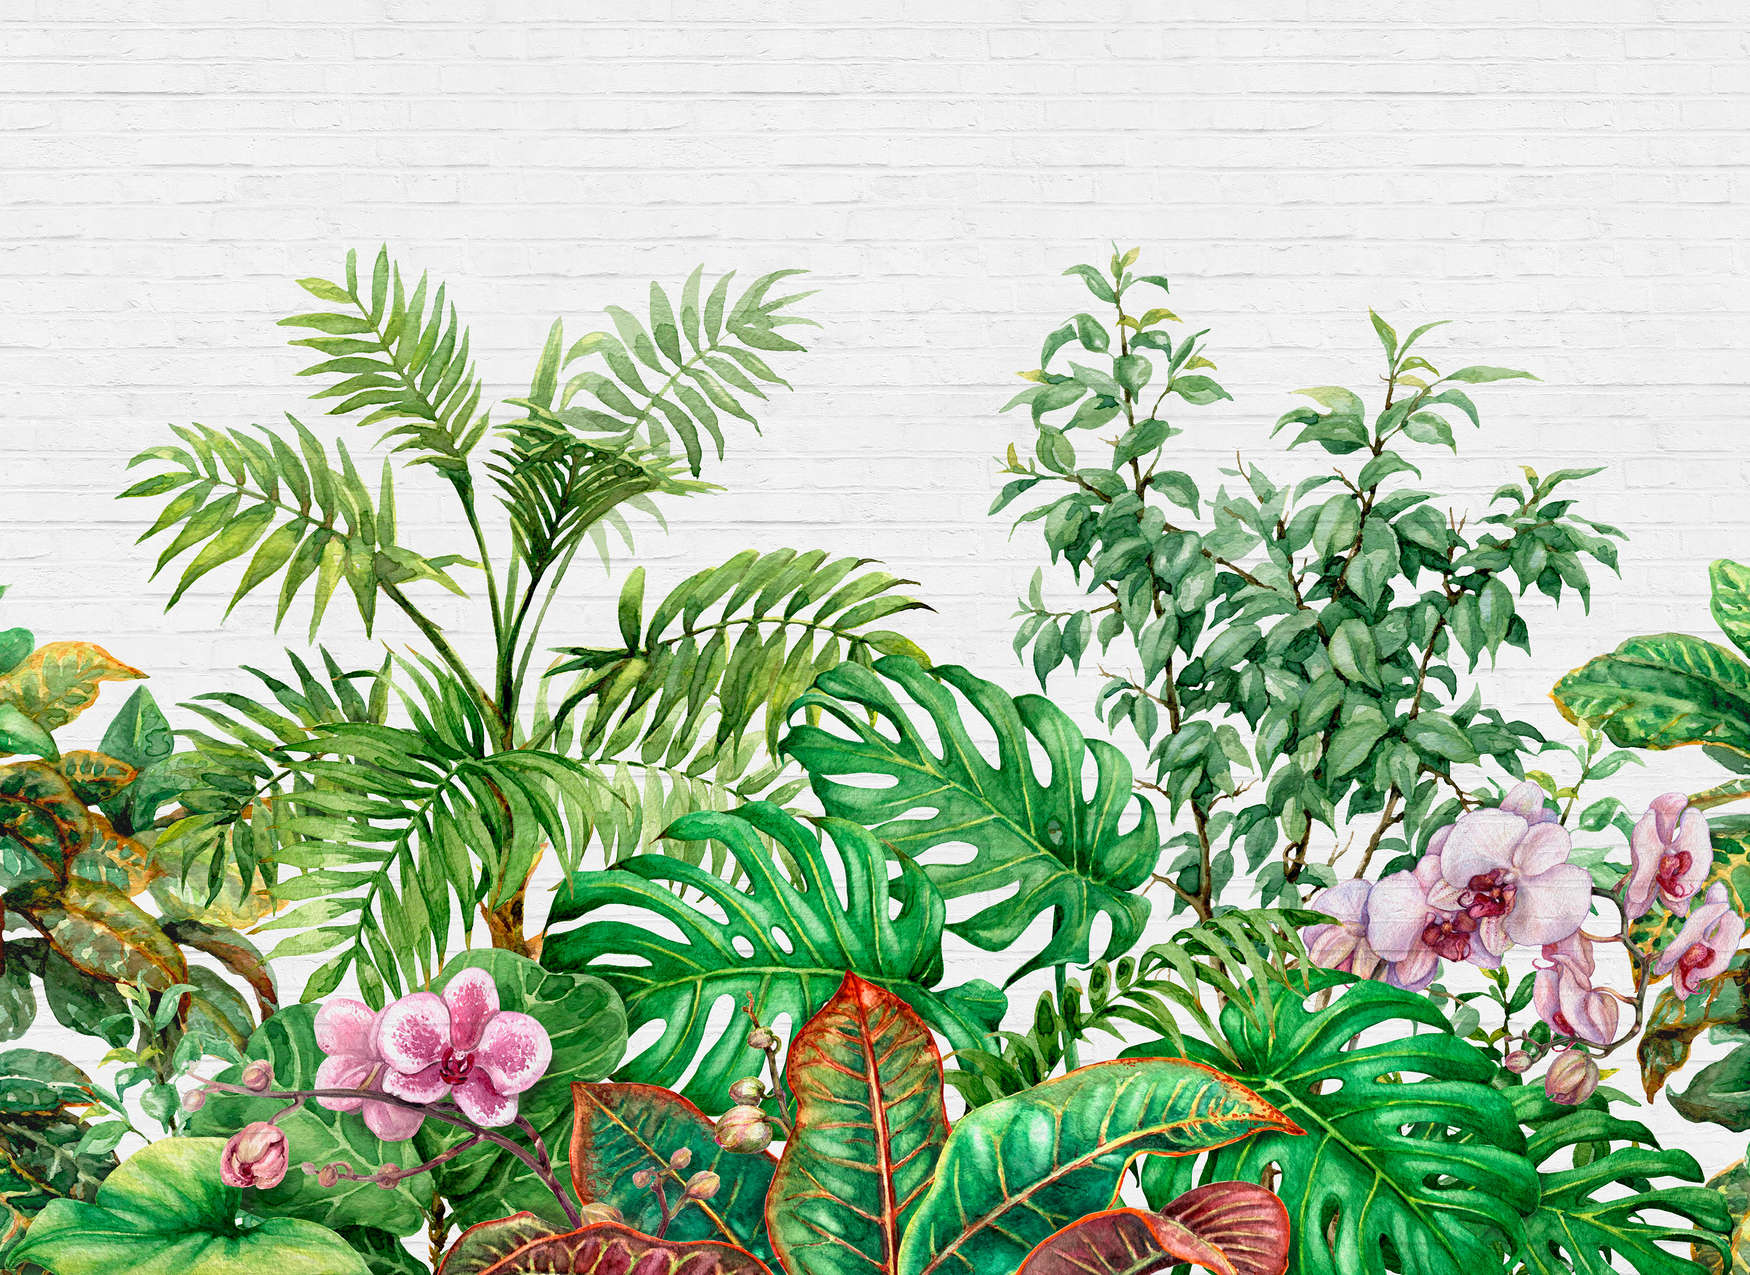             Muurmotief met Junglebladeren - Groen, Wit, Roze
        